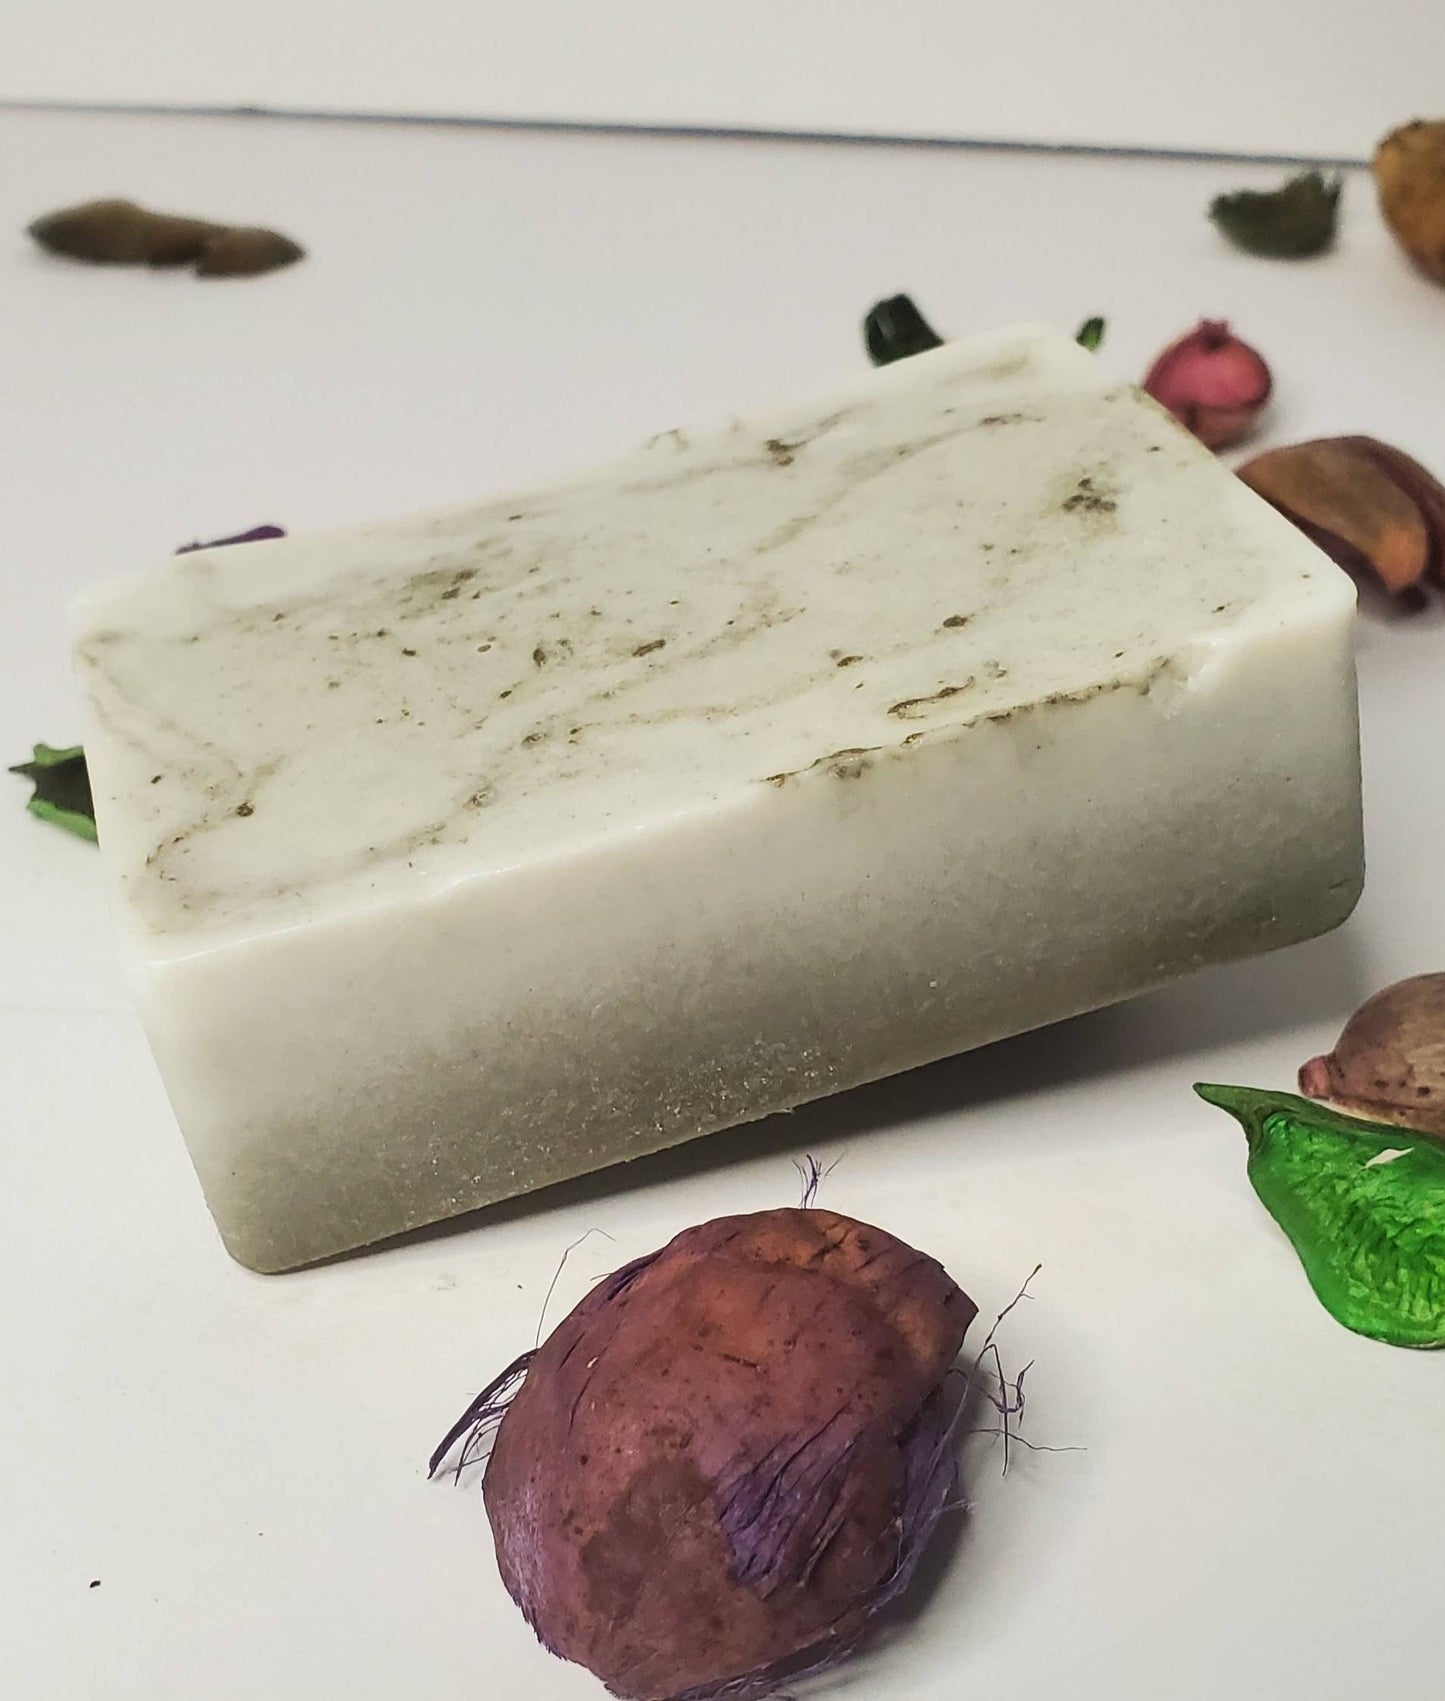 Manville(Men) Natural Soap Bars|Plant Based